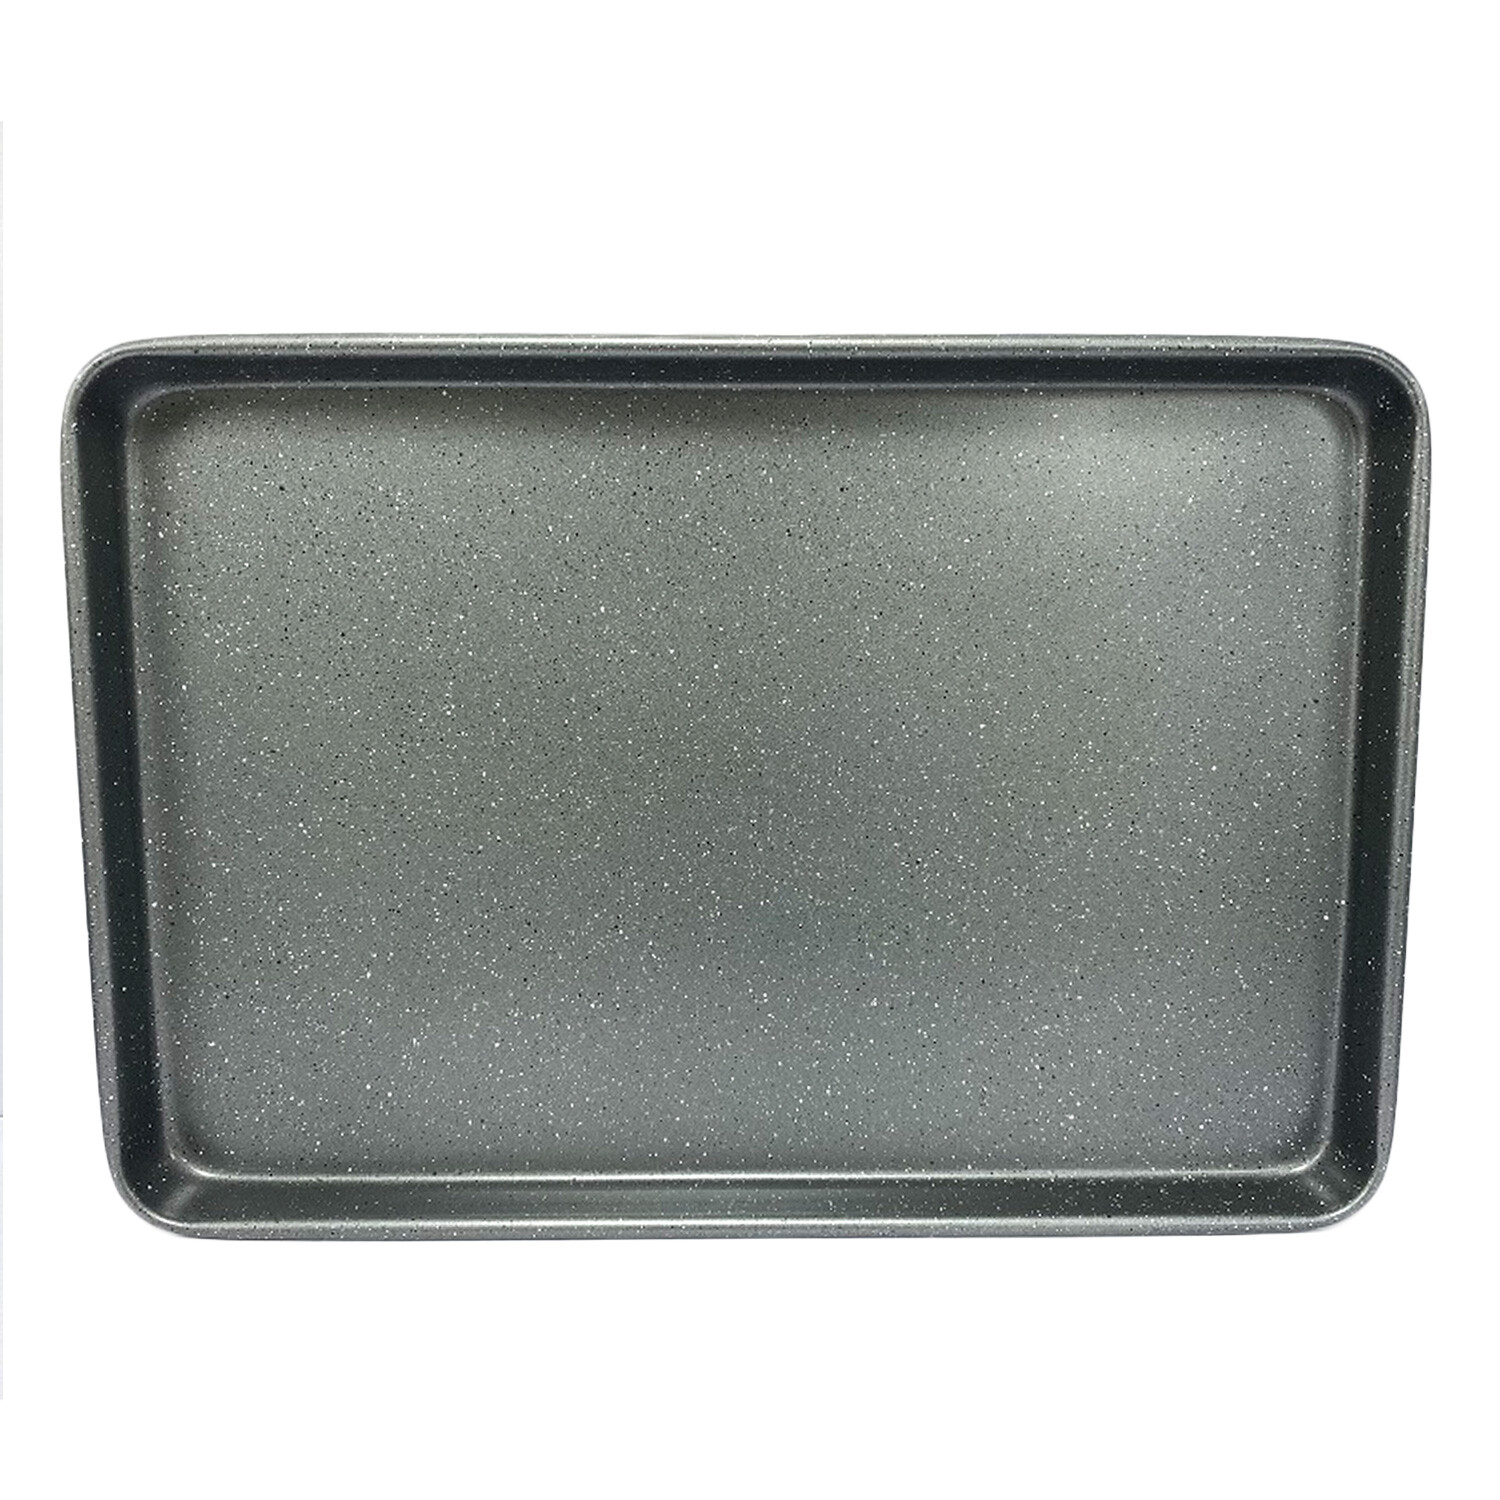 Marble Stone Finish Oven Tray - Grey / Large Image